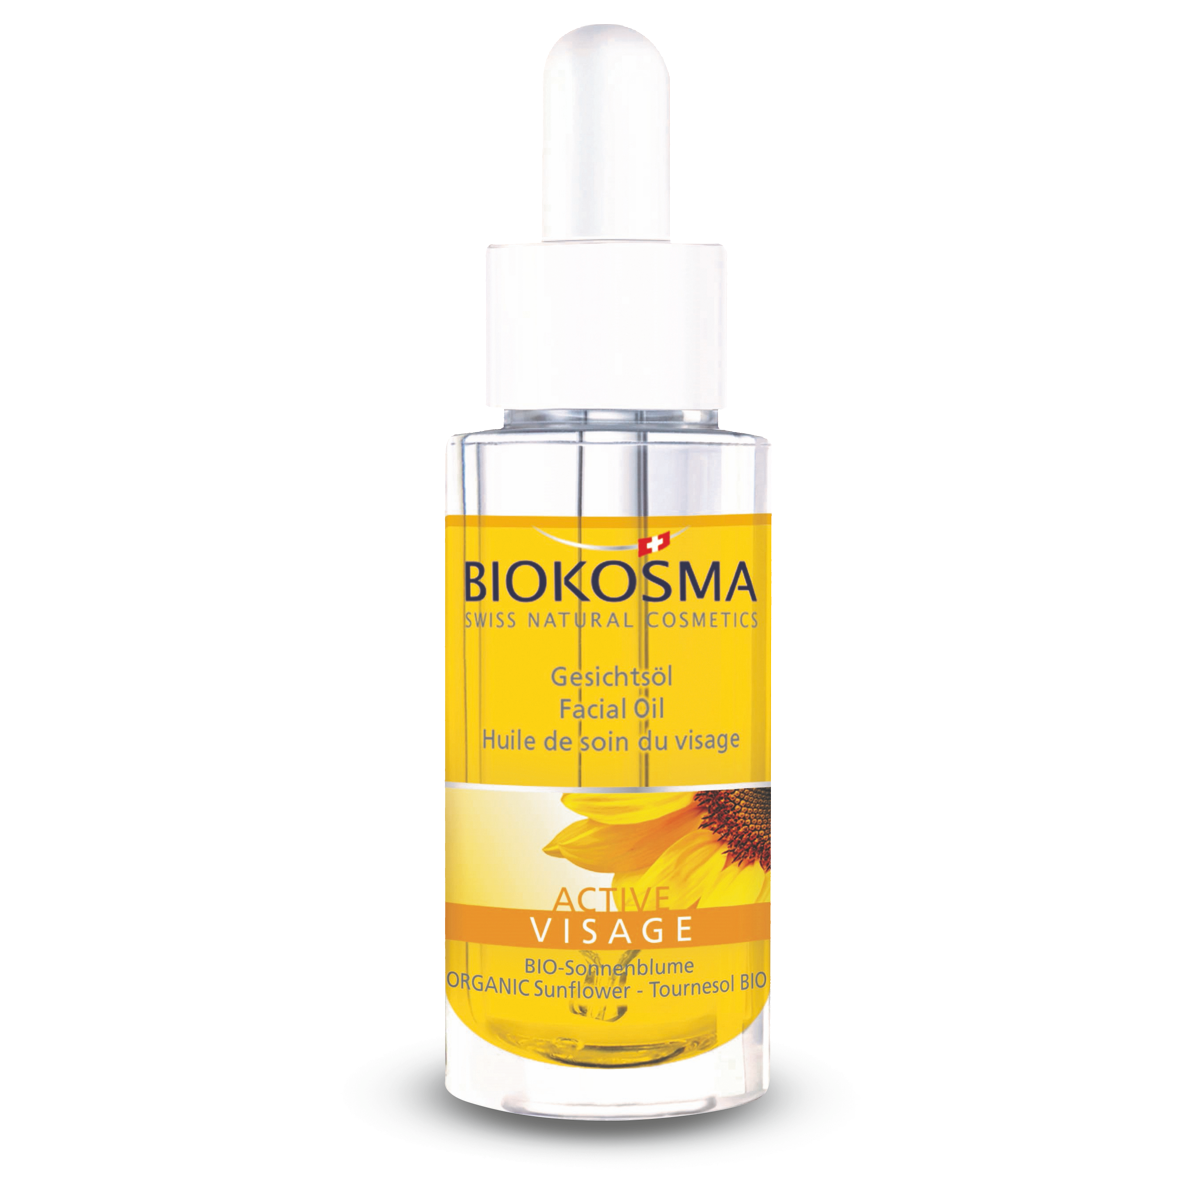 BIOKOSMA Active Gesichtsöl mit Pipette 30 ml - mit Bio-Sonnenblumenöl